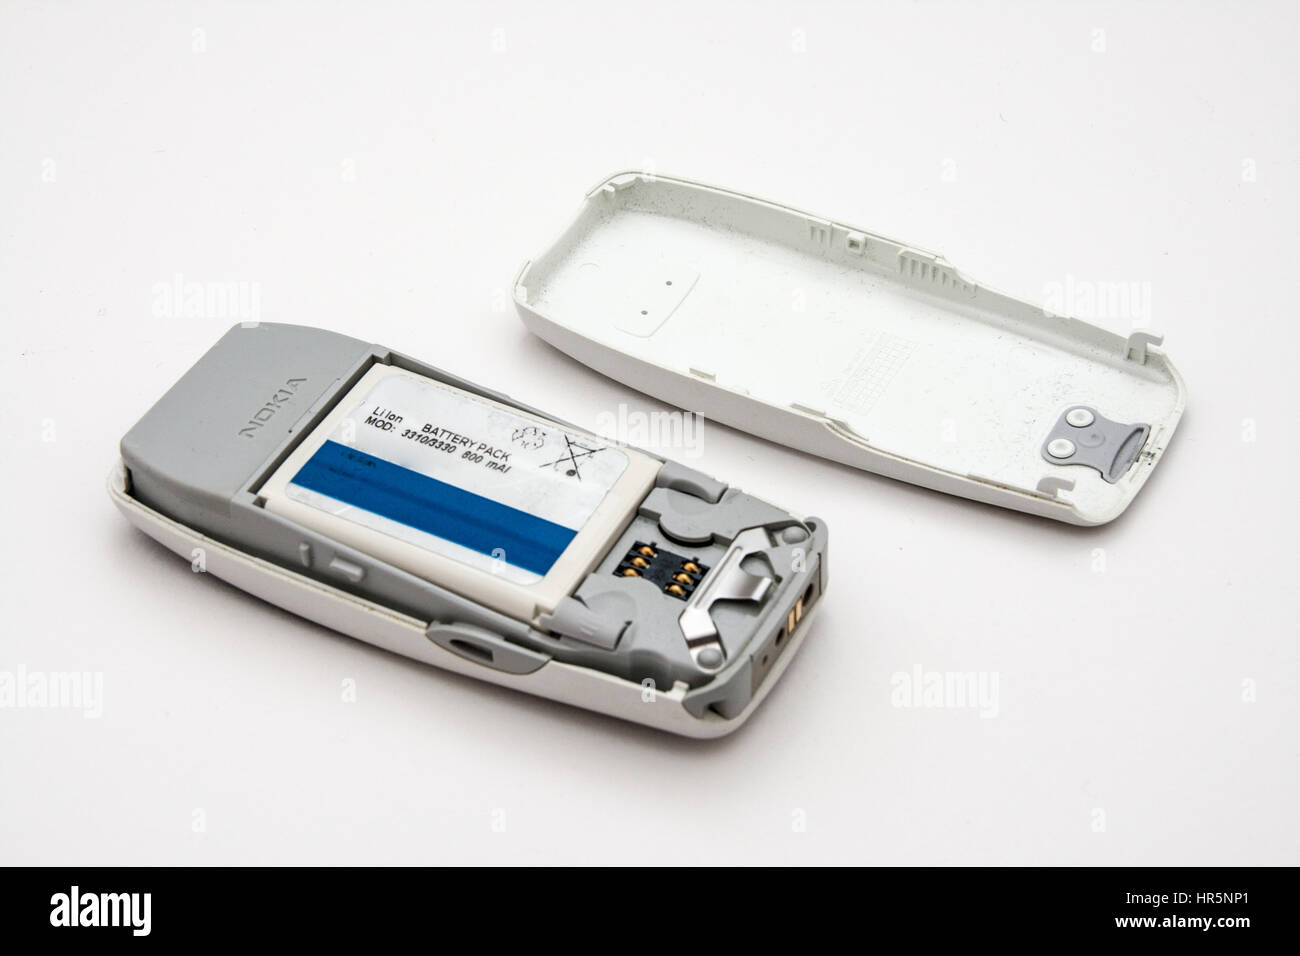 Rome, Italy - February 02, 2013: Old Nokia phone isolated on white background Stock Photo